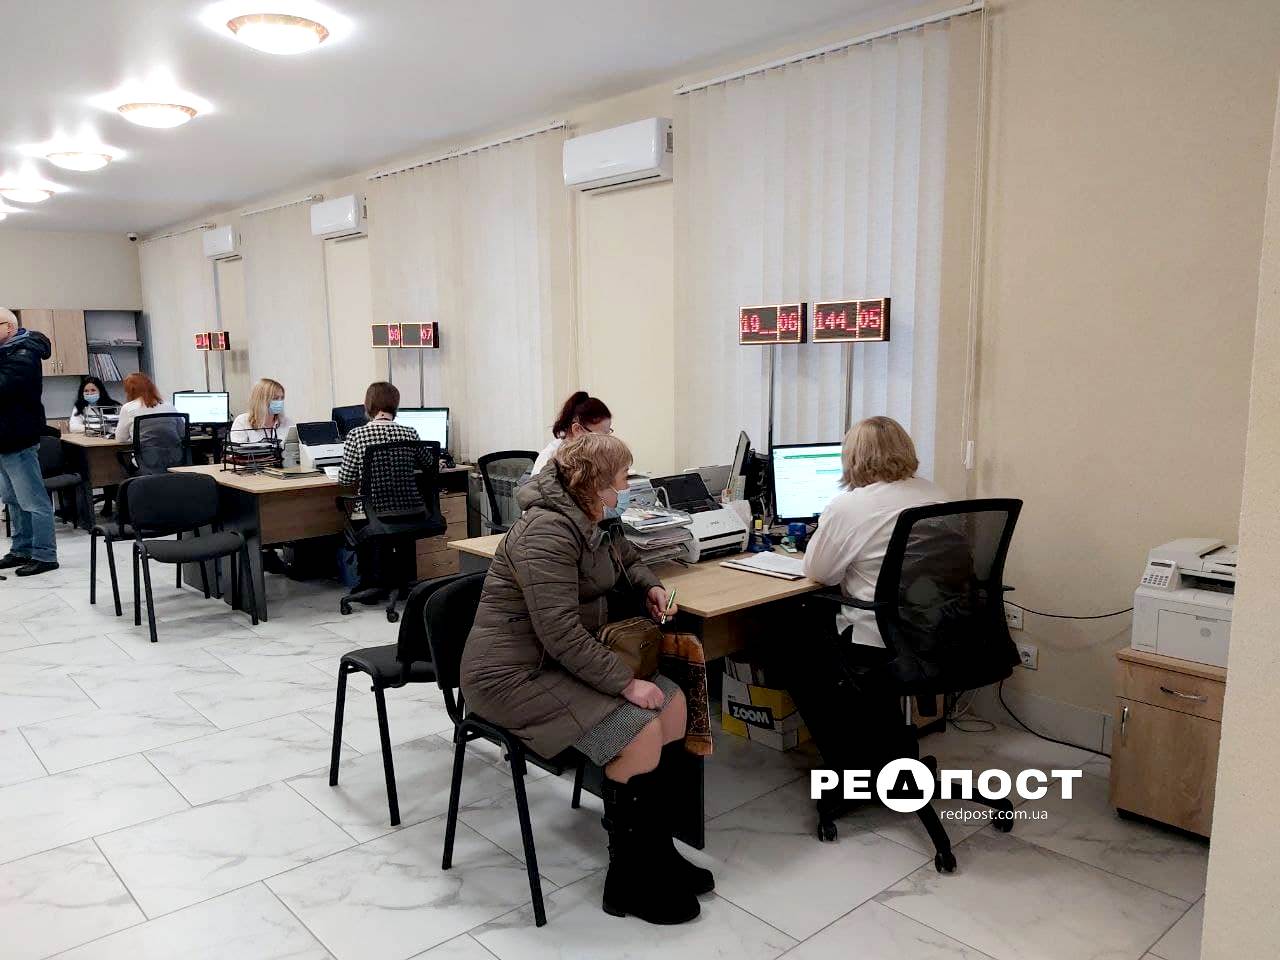 "Прозорий офис" открылся в Харькове